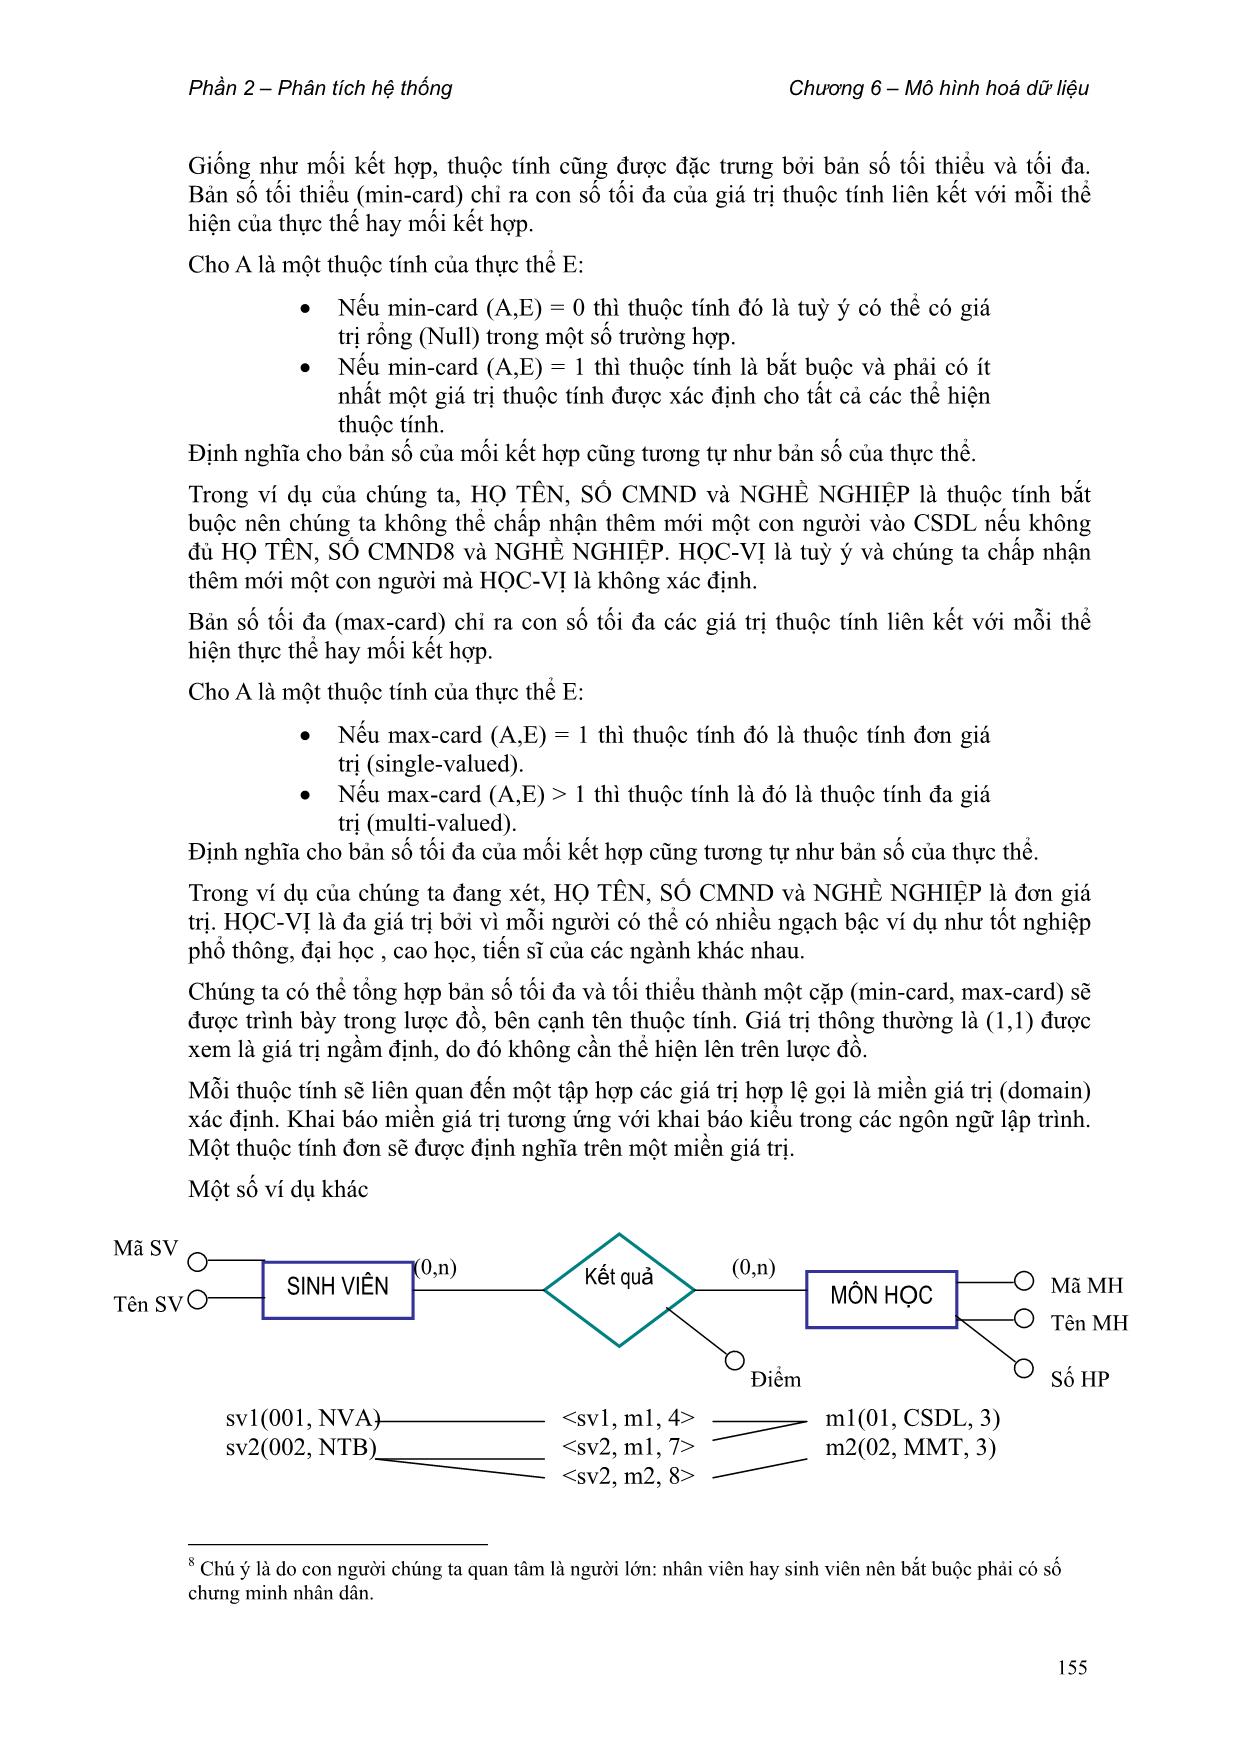 Giáo trình Phân tích thiết kế hệ thống thông tin (Phần 2) trang 8